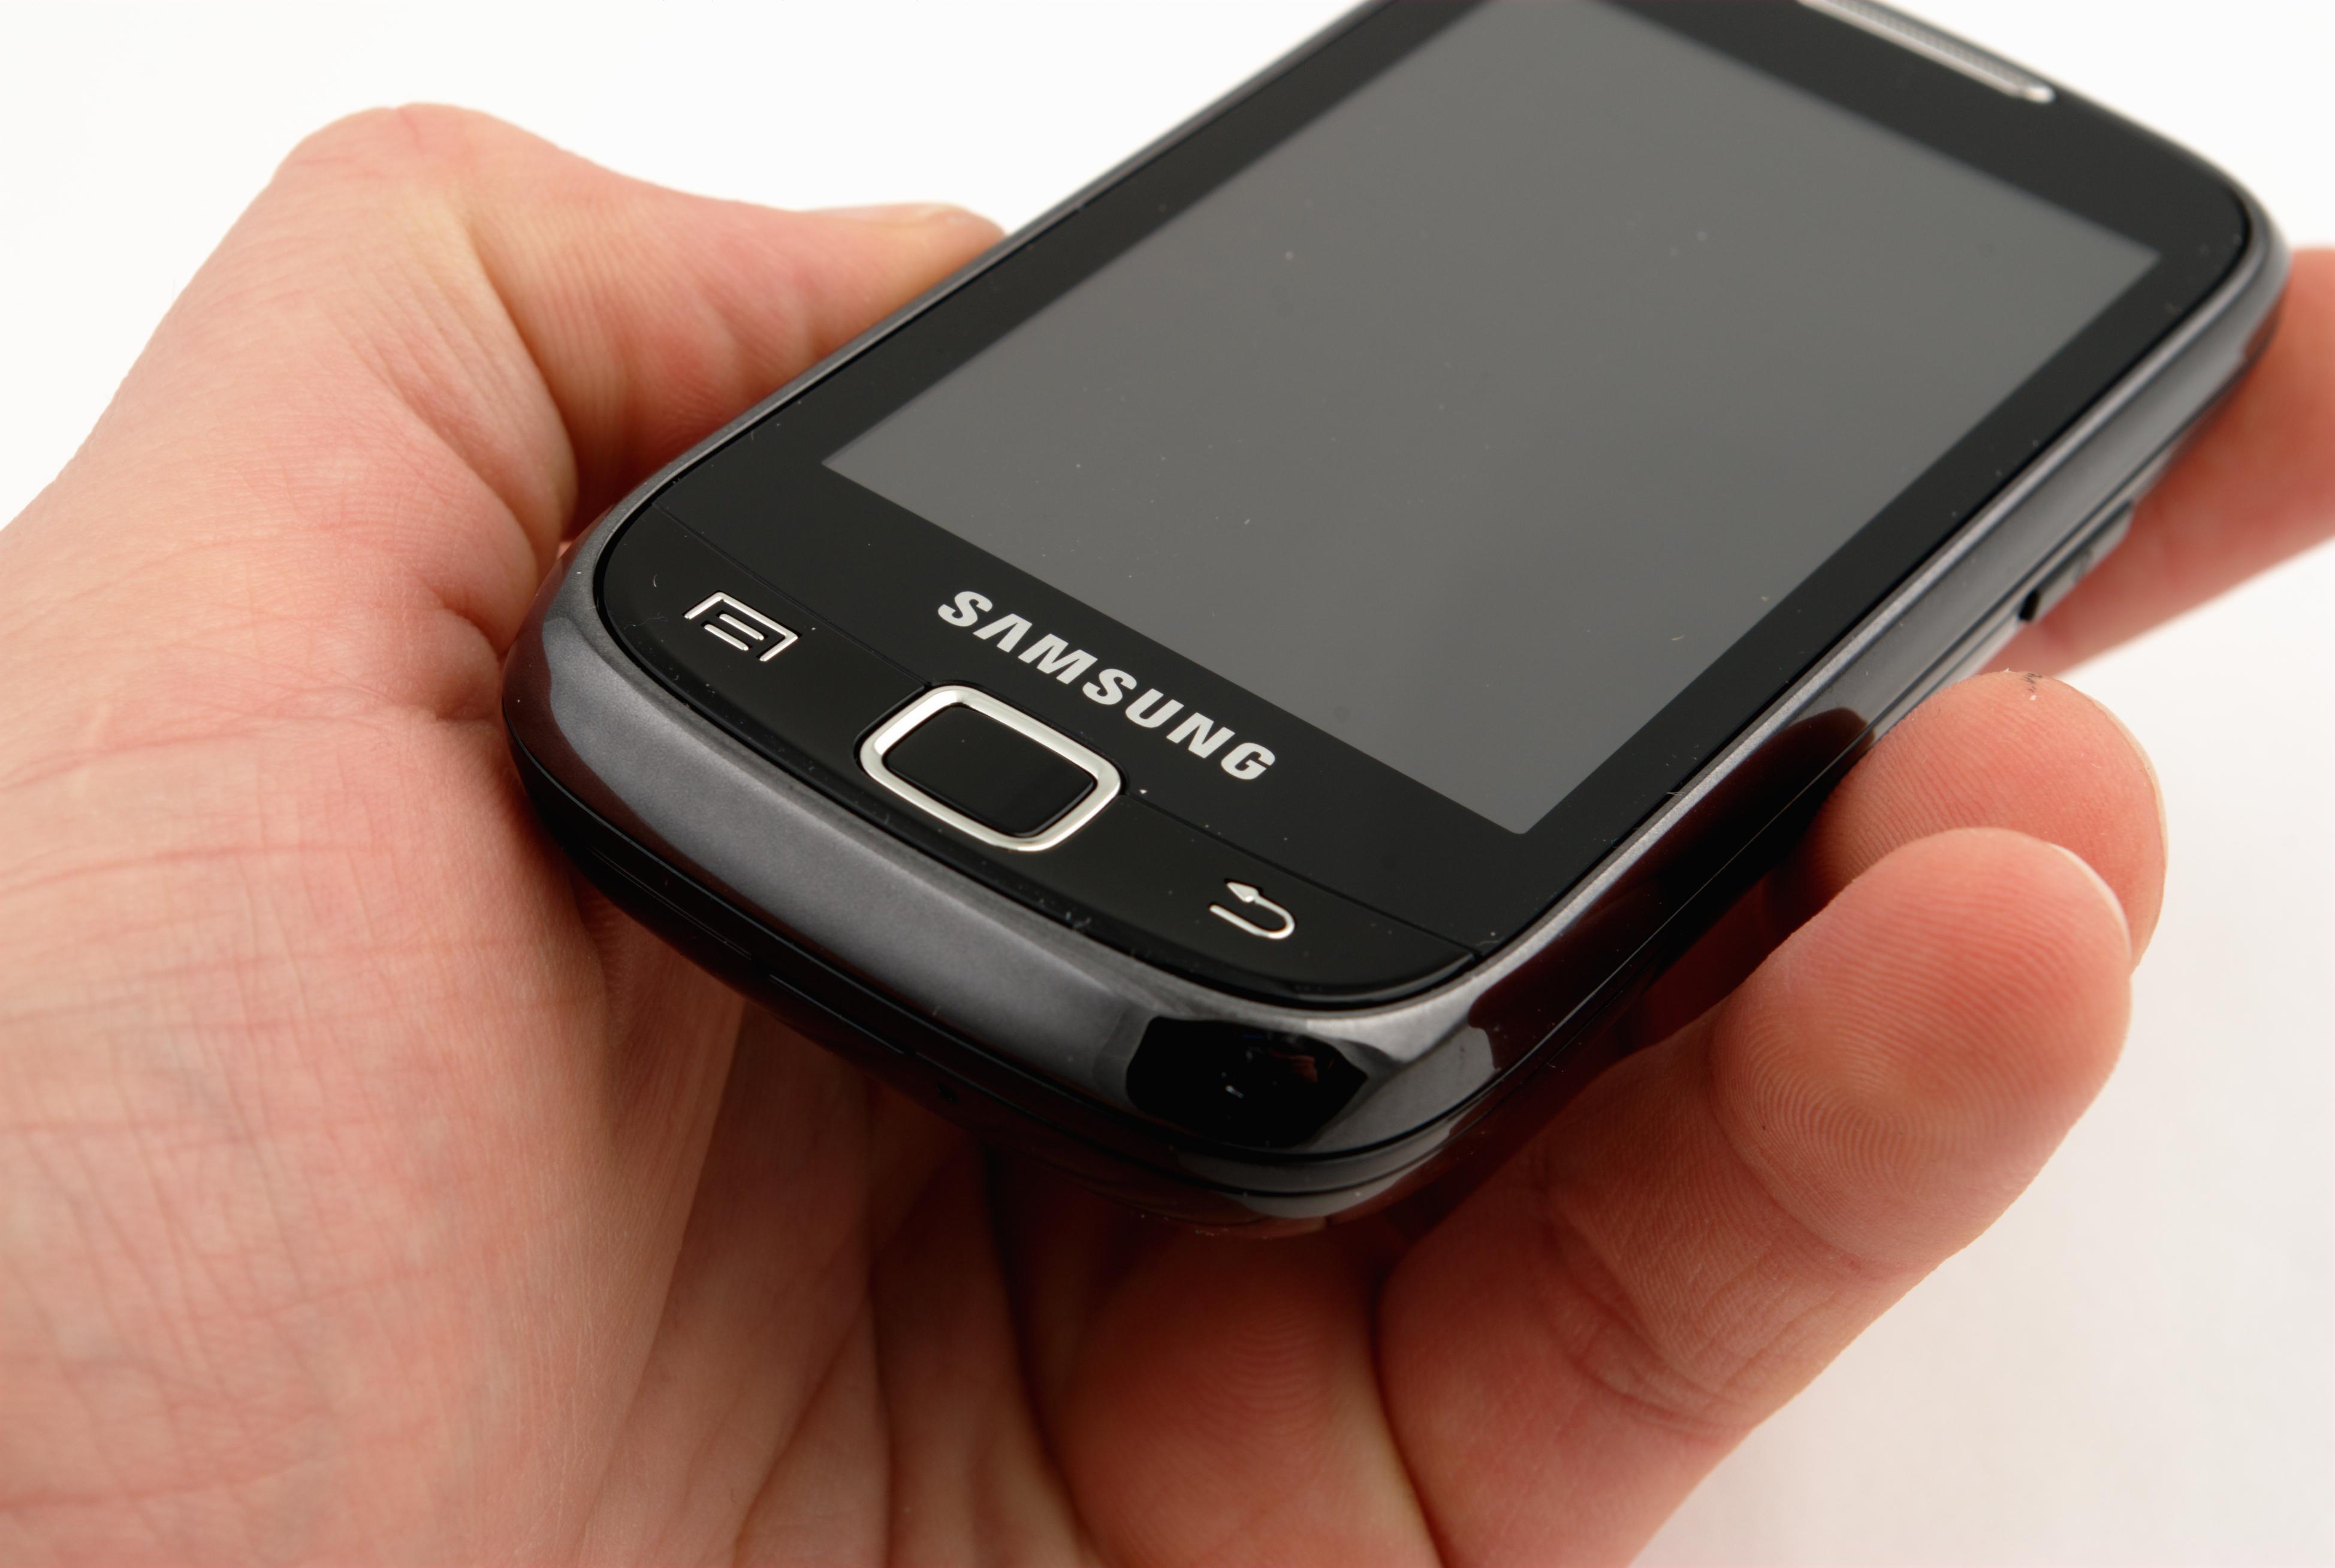 Ved første øyekast ser Galaxy 551 ut som en litt klumpete touch-telefon.